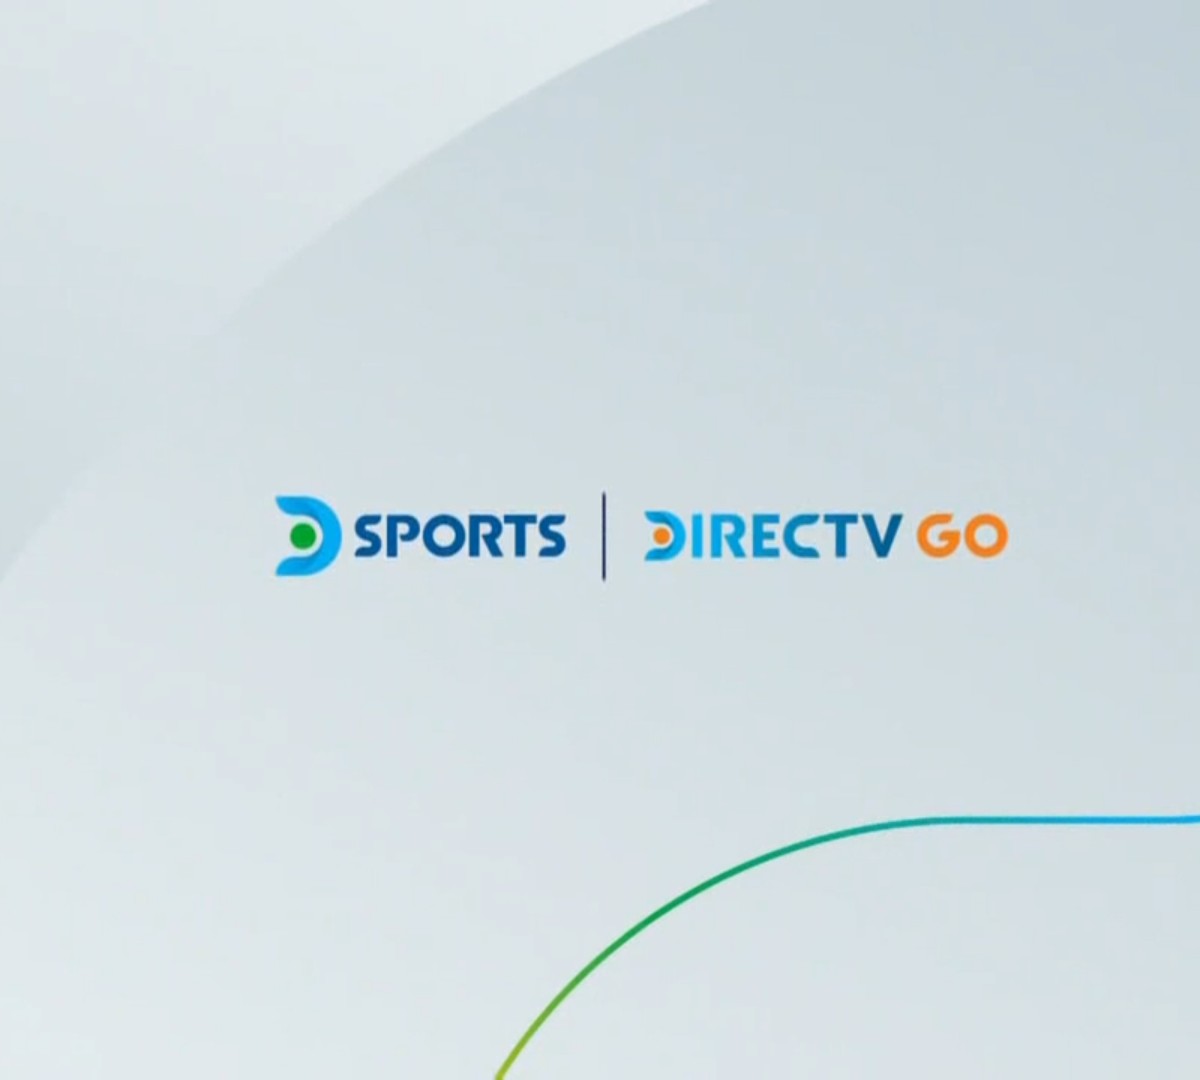 SKY e DGO iniciam venda de novos canais esportivos em PPV com